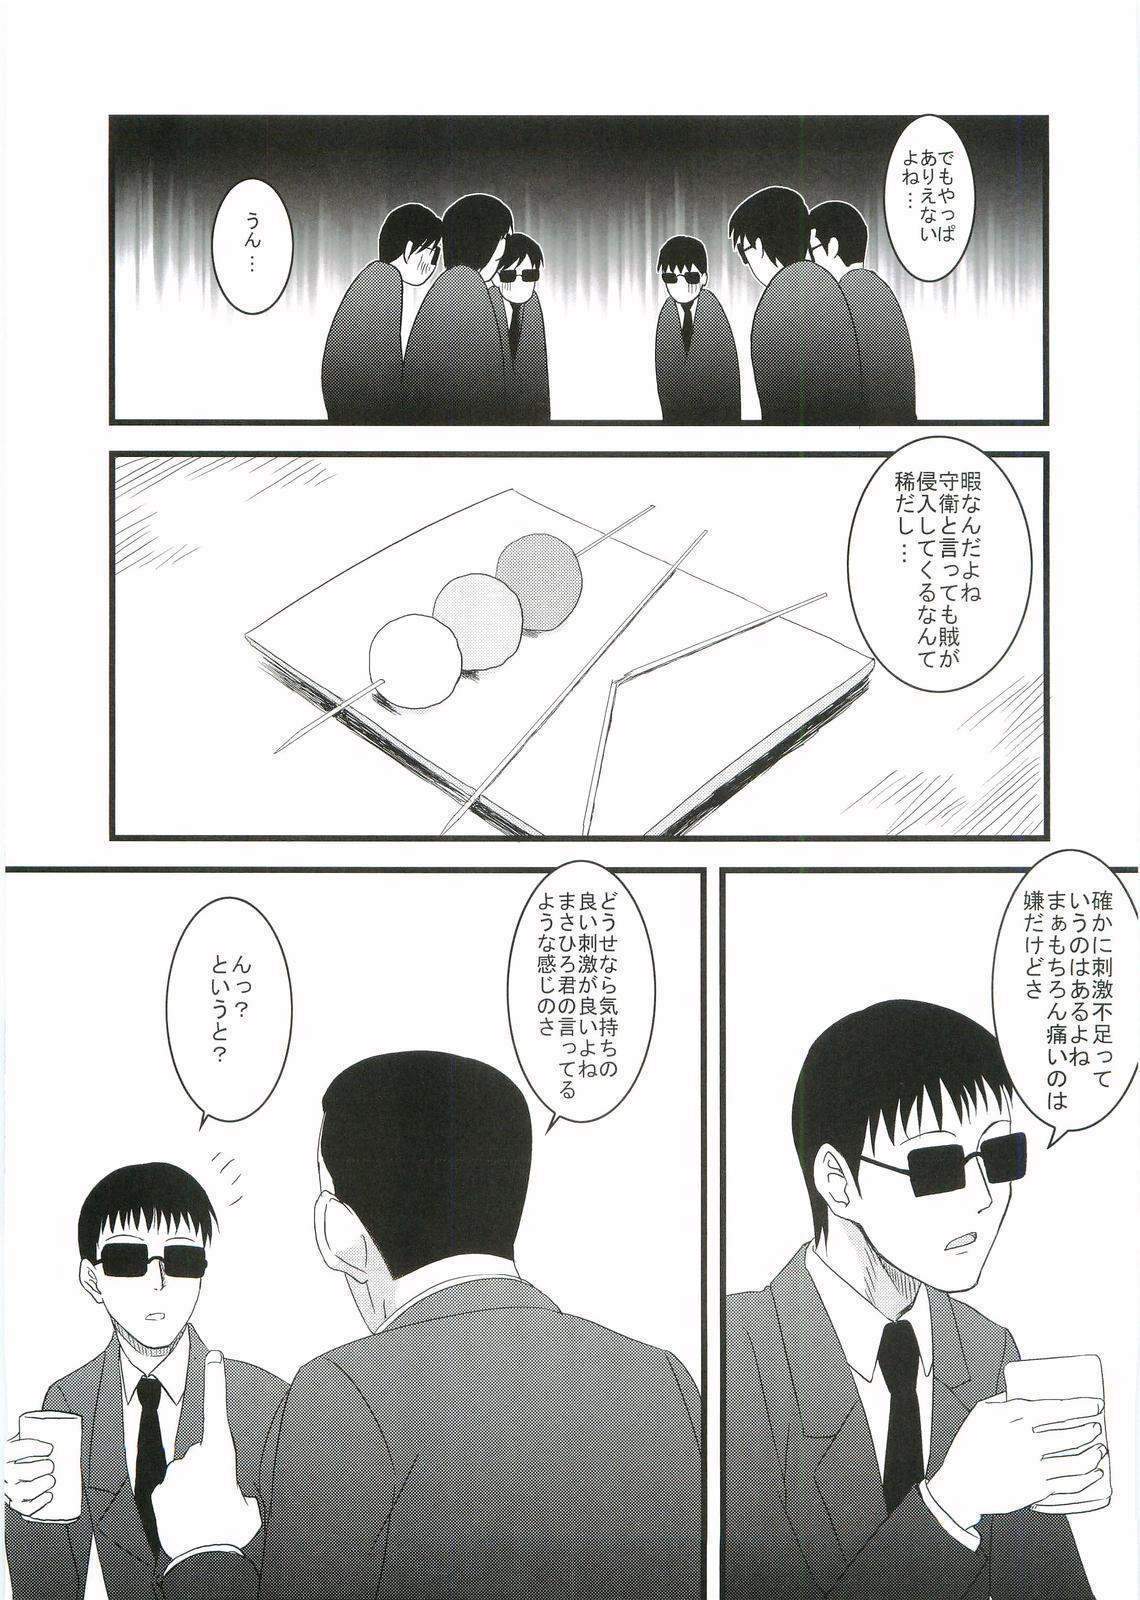 Gapes Gaping Asshole Kouhukuya no Ehon Gokujo 2 - Gokujou seitokai Missionary - Page 8